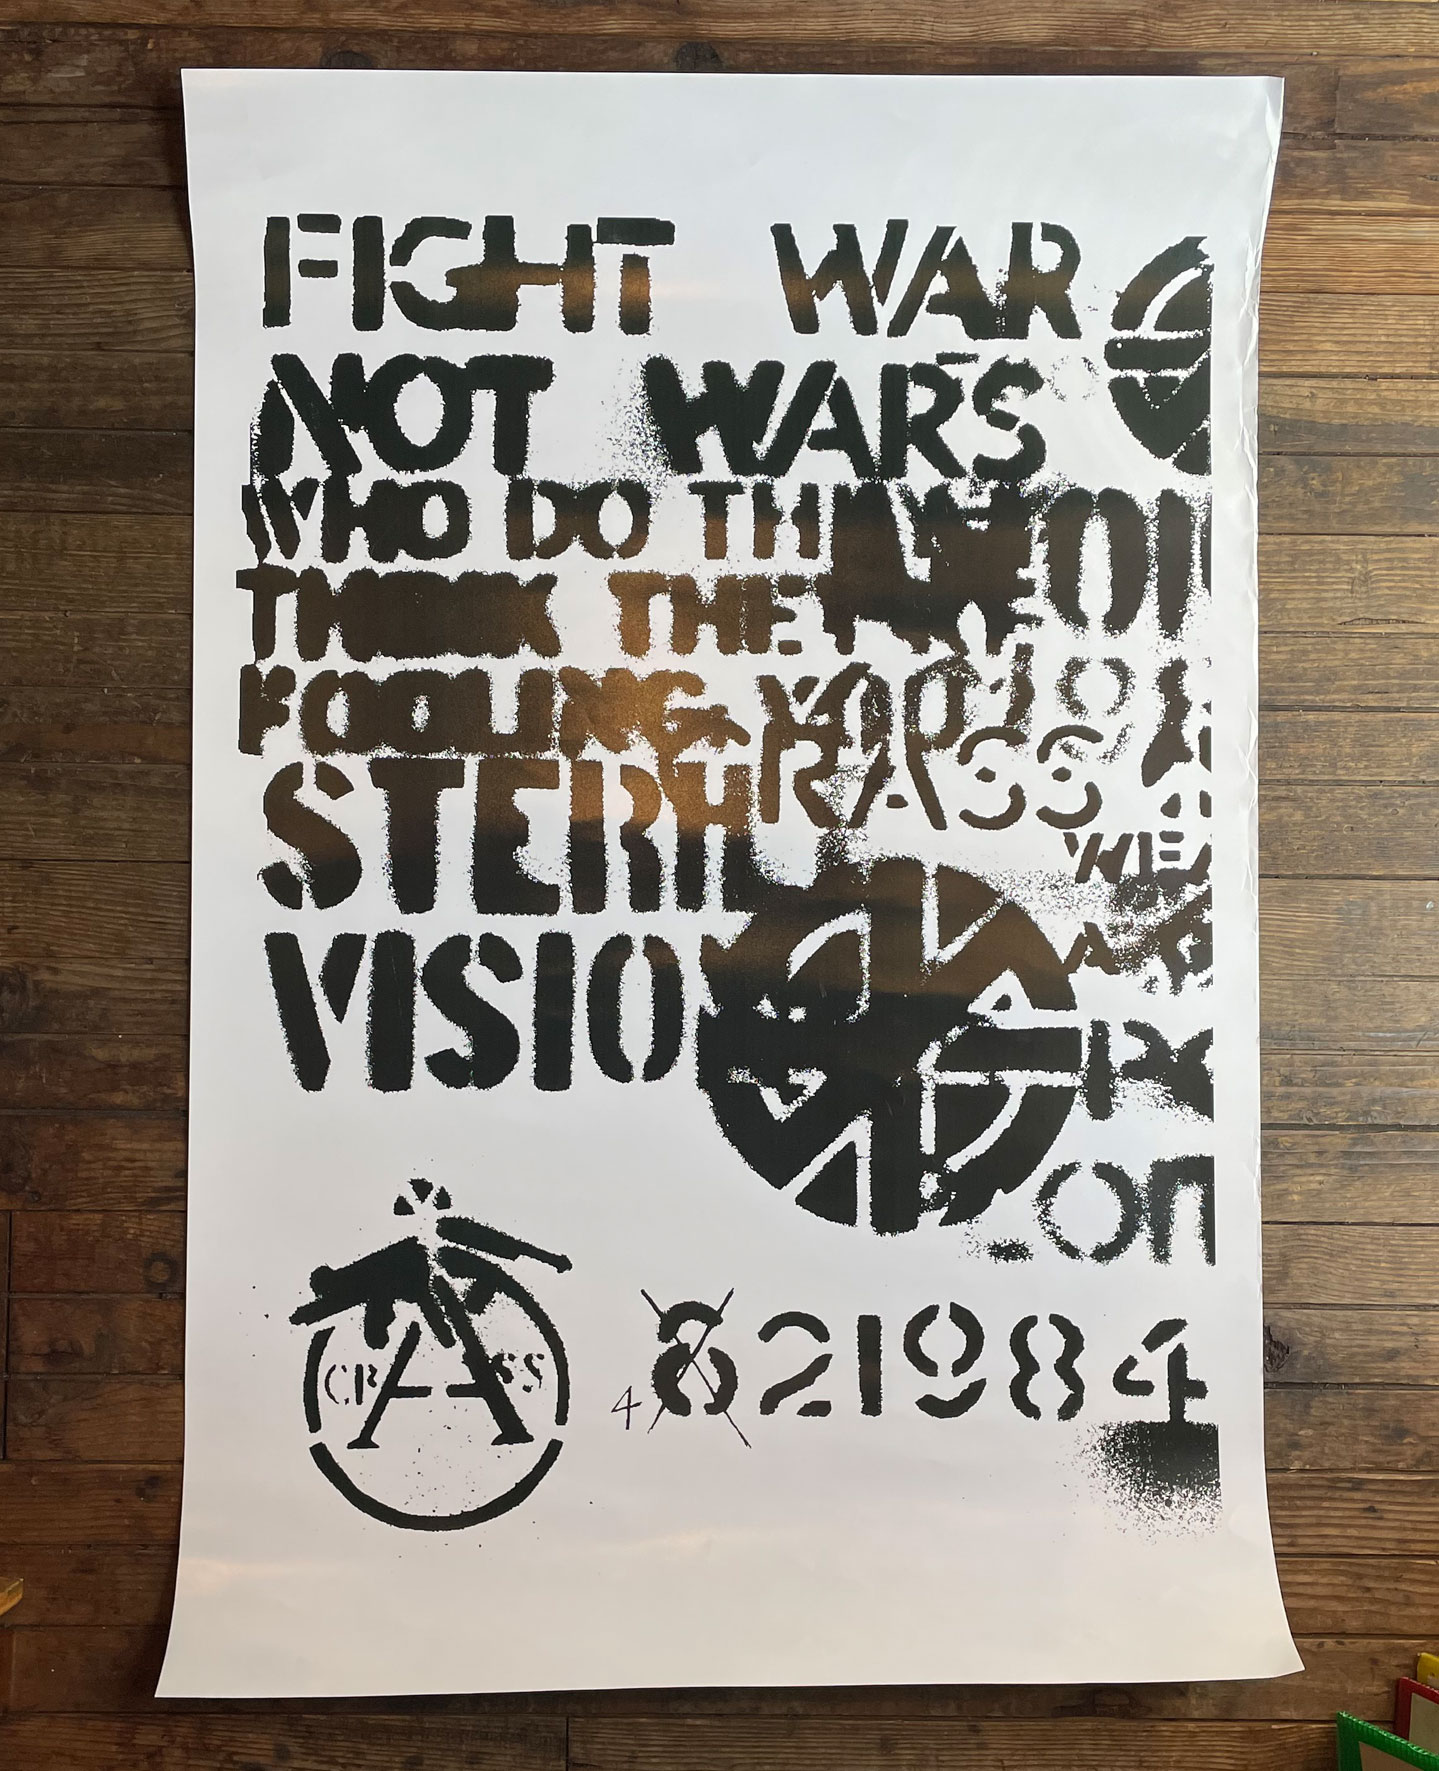 CRASS ポスター FIGHT WAR